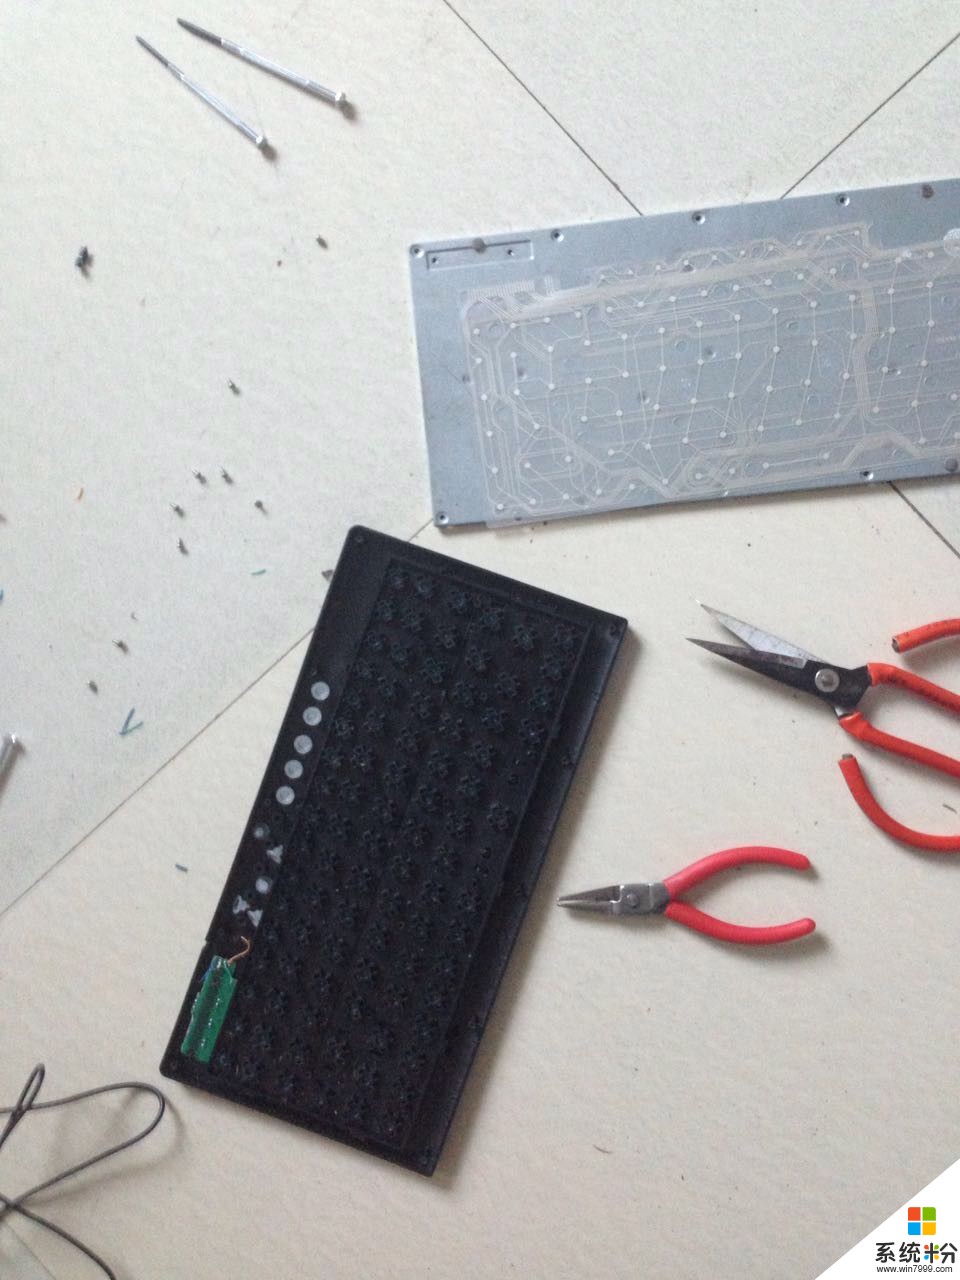 鍵盤線斷了如何修理 鍵盤線斷了修理的方法有哪些